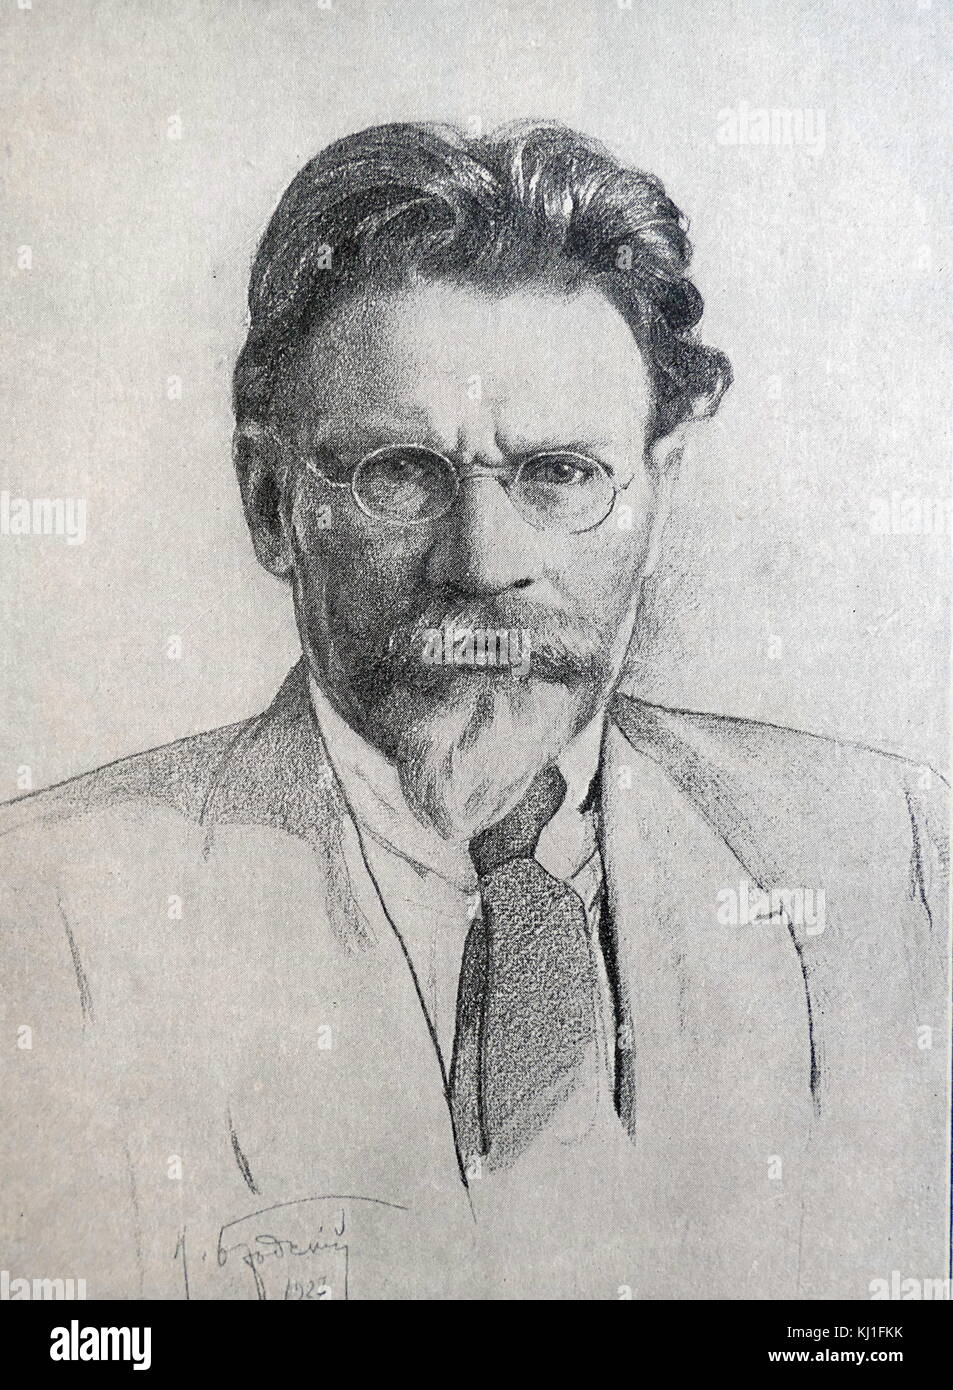 Mikhaïl Ivanovitch Kalinine (1875 - 1946), révolutionnaire bolchevik et fonctionnaire marxiste-léniniste. Il a servi comme chef de l'état de la République socialiste fédérative soviétique de Russie et plus tard de l'Union soviétique de 1919 à 1946. À partir de 1926, il a été un membre du Politburo du parti communiste de l'Union soviétique. Banque D'Images